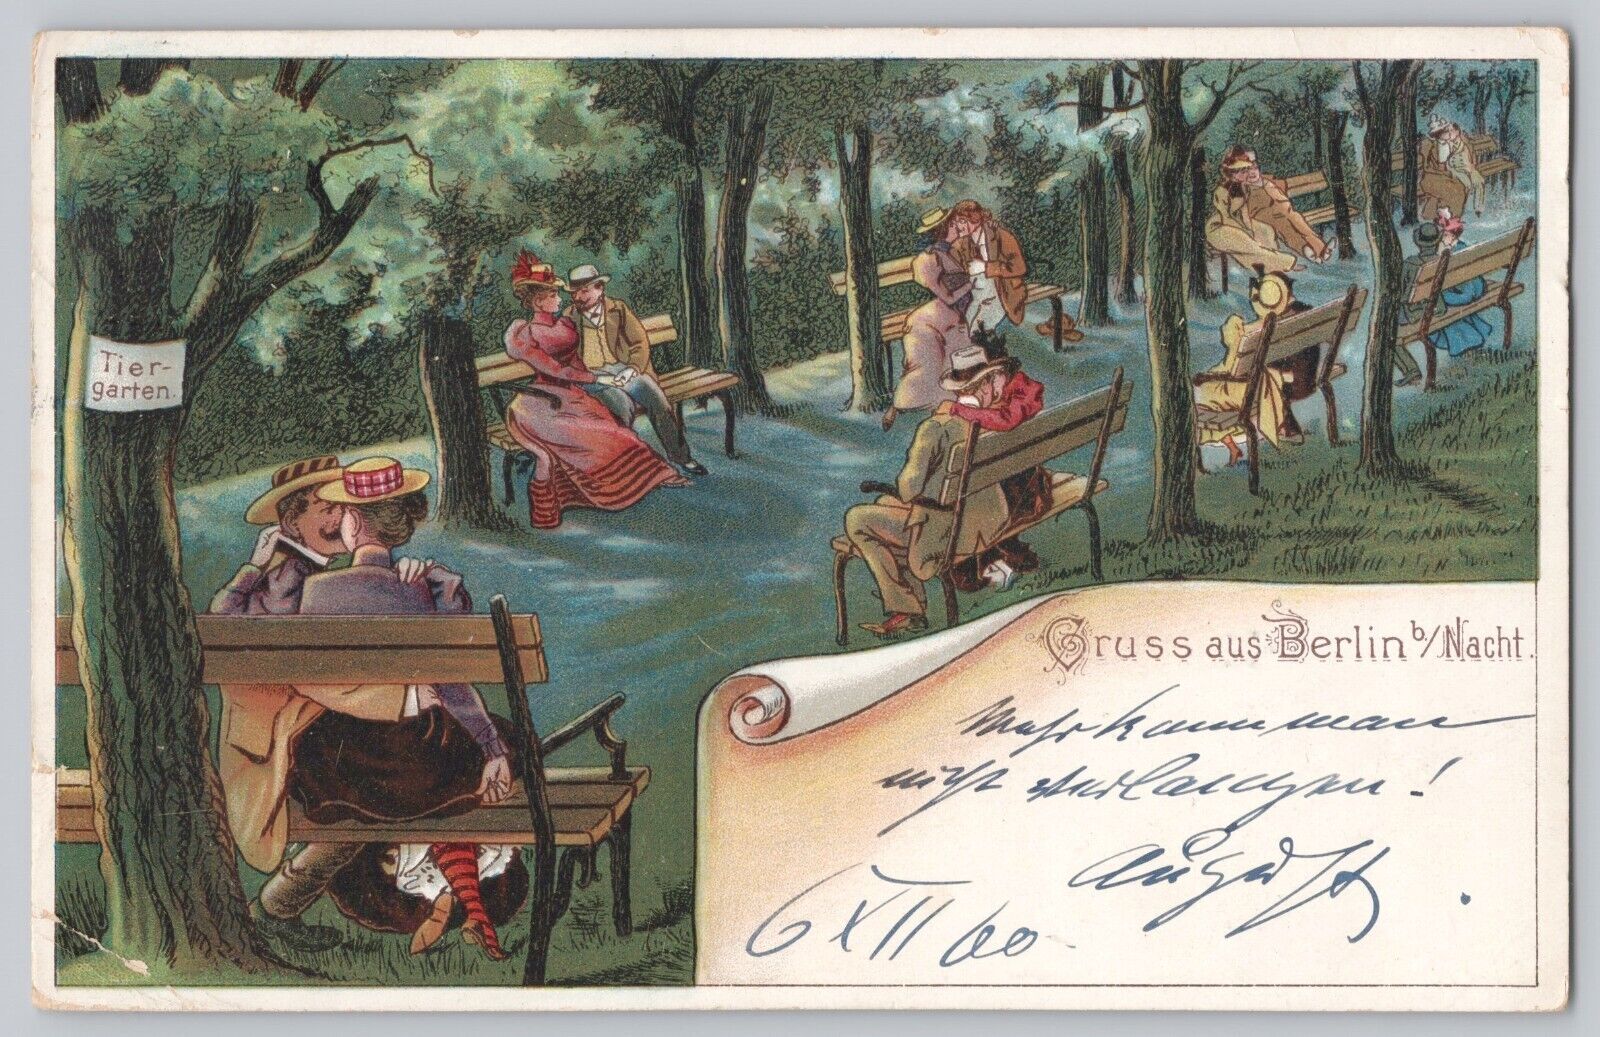 Gruss aus Berlin at Nacht 1900 Postcard Showing Tiergarten Unbridled Nightlife